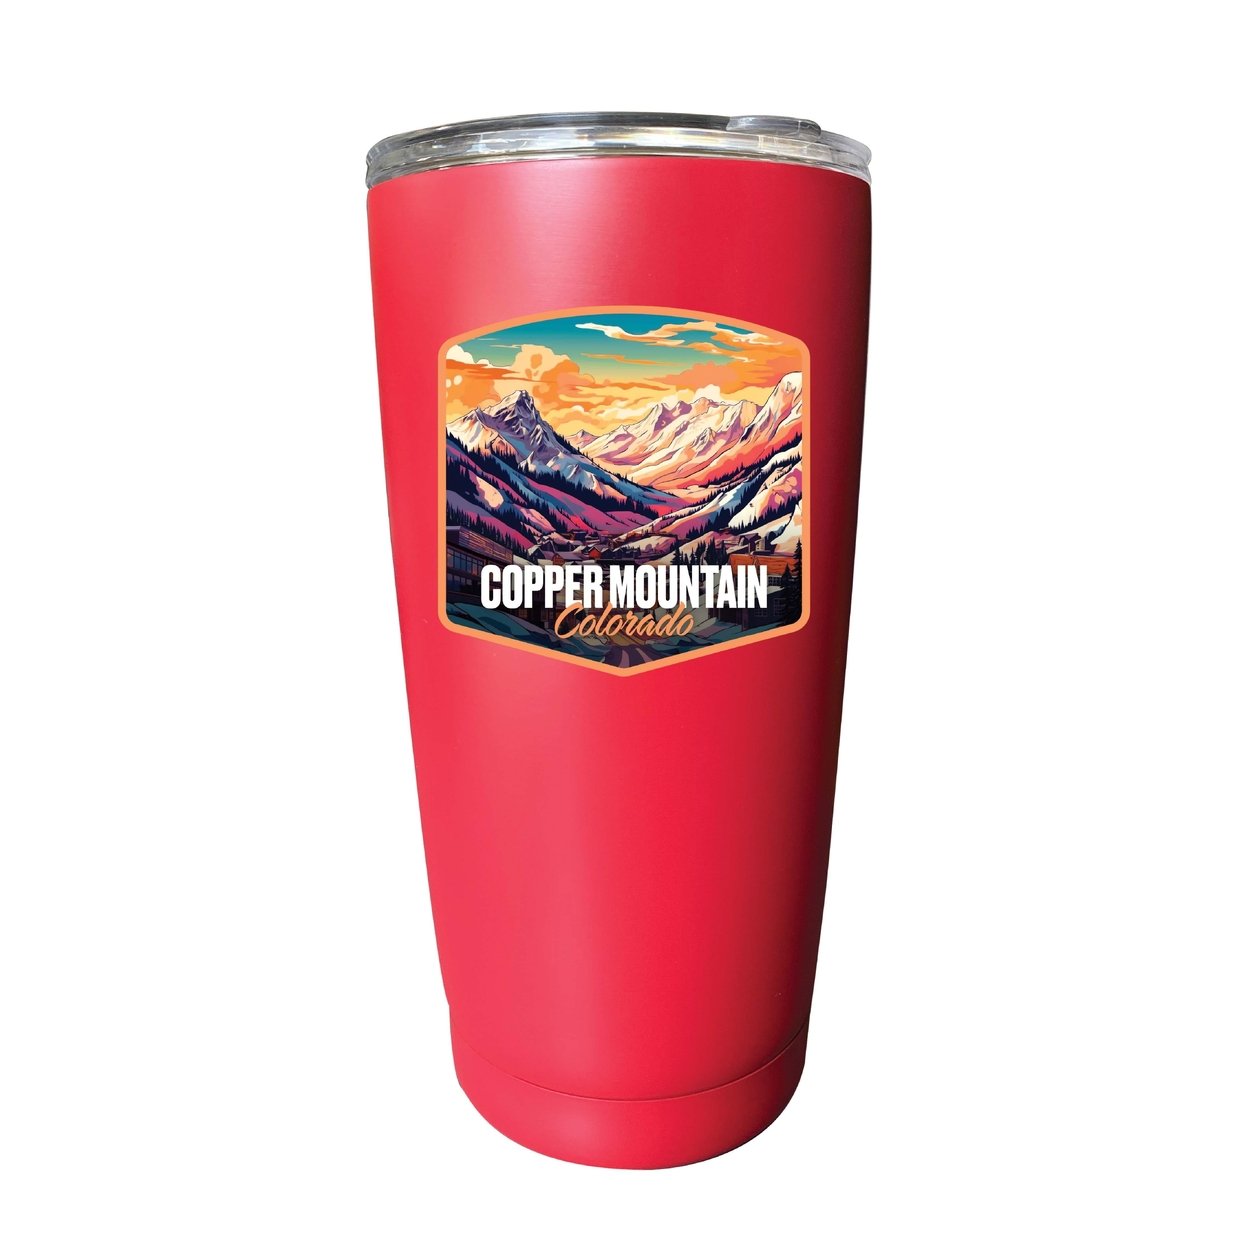 Copper Mountain A Souvenir 16 Oz Insulated Tumbler - Pink,,Single